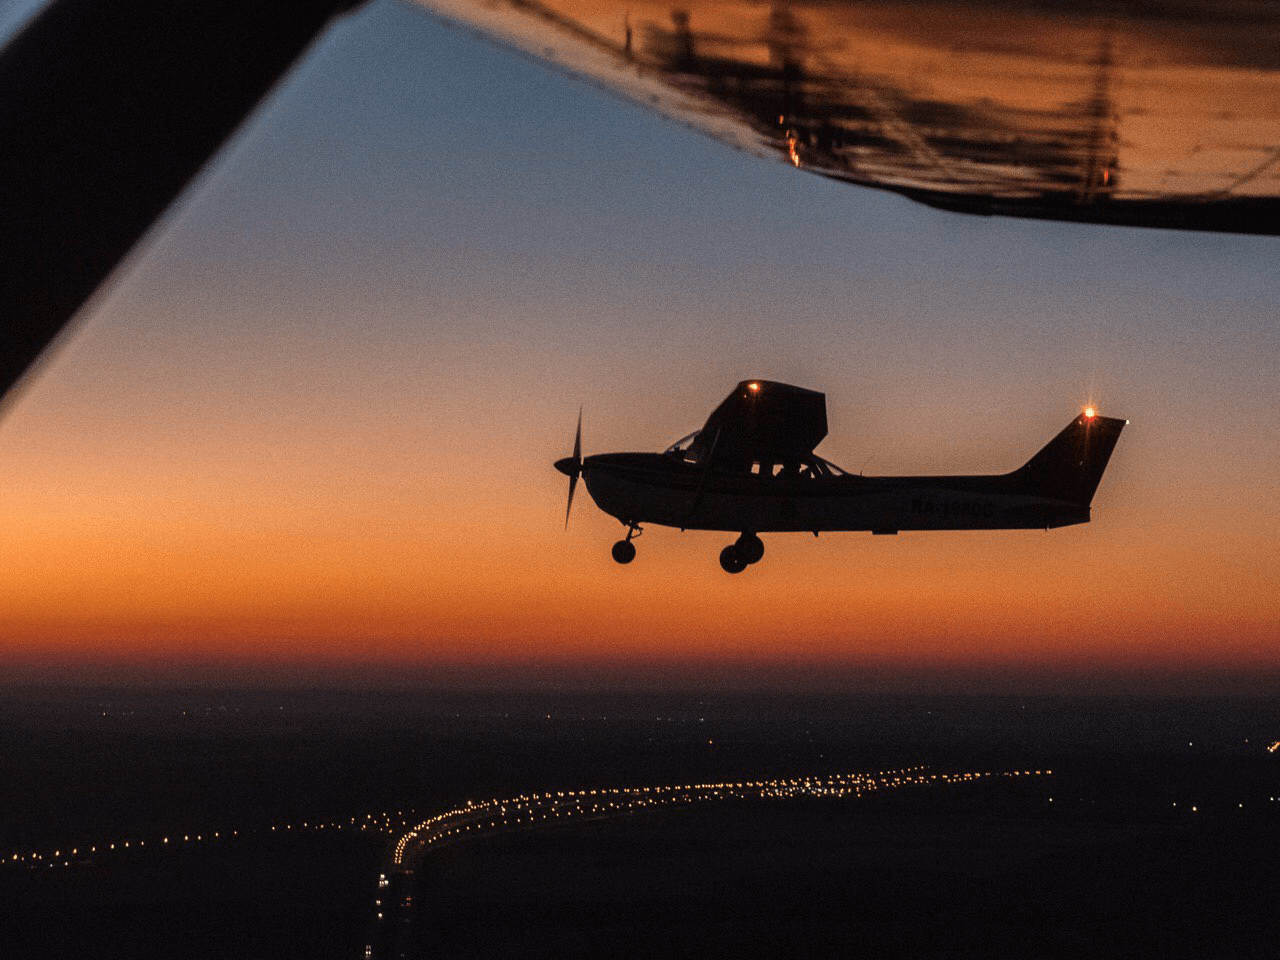  Полёты в темное время суток на самолётах Cessna-172, 20 мин, Мячково